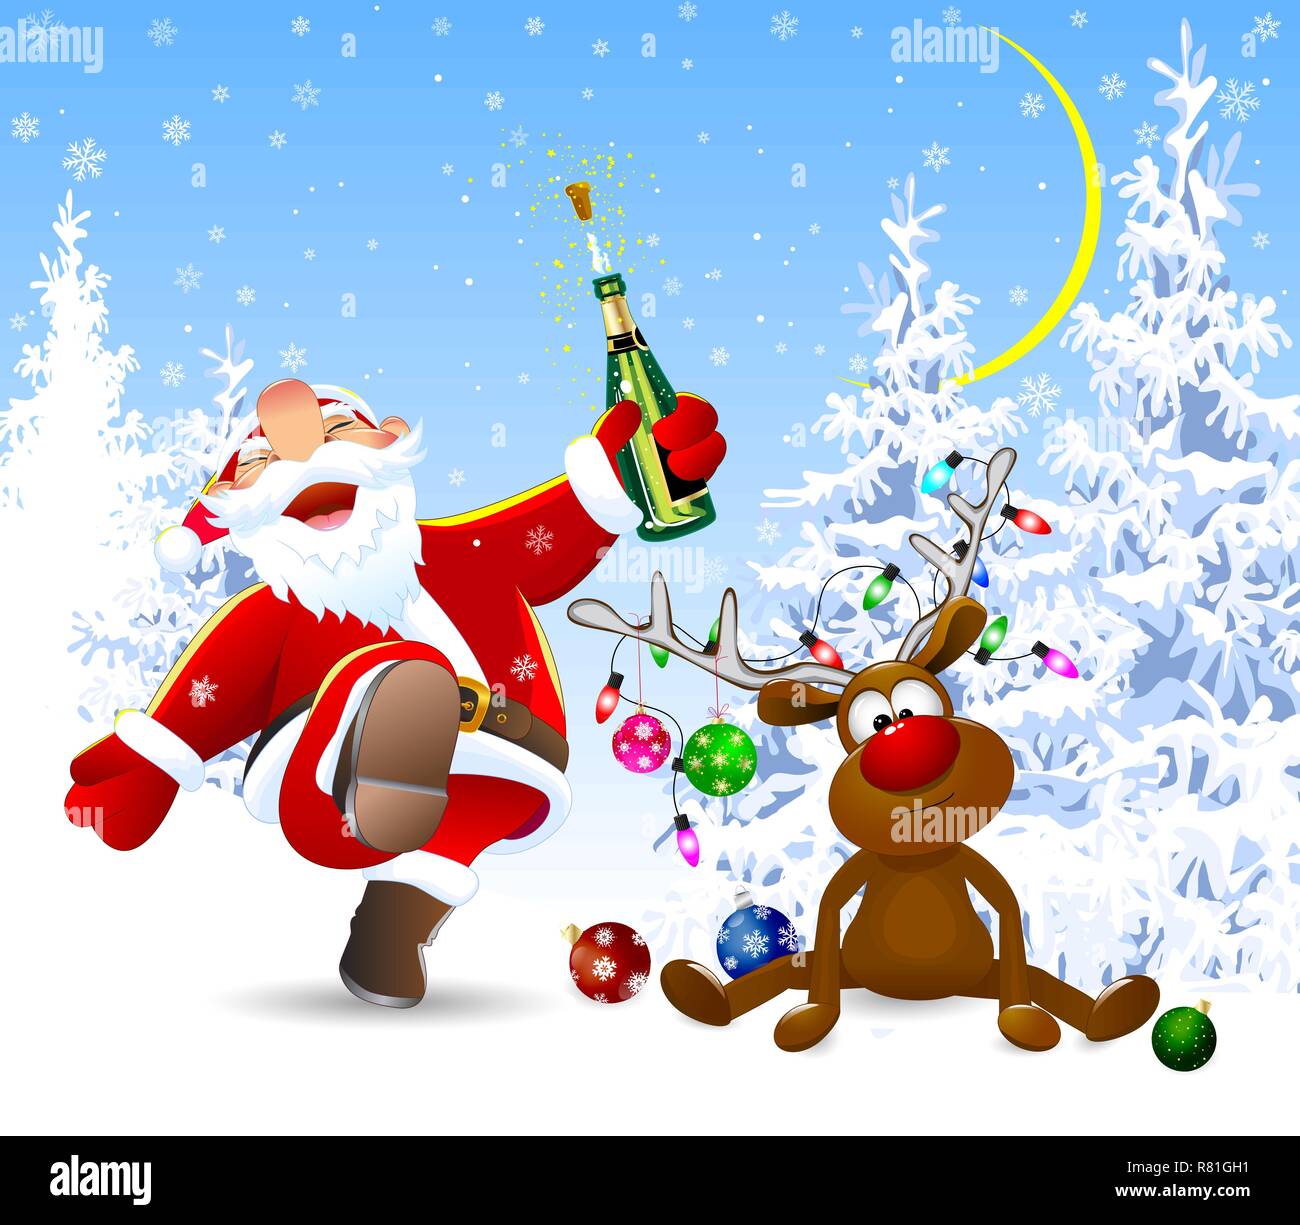 Santa Claus mit einer Flasche in der Hand. Ein Reh mit Weihnachten Kugeln dekoriert, eine Girlande aus Leuchten und einen Bug. Winter Forest. Stock Vektor